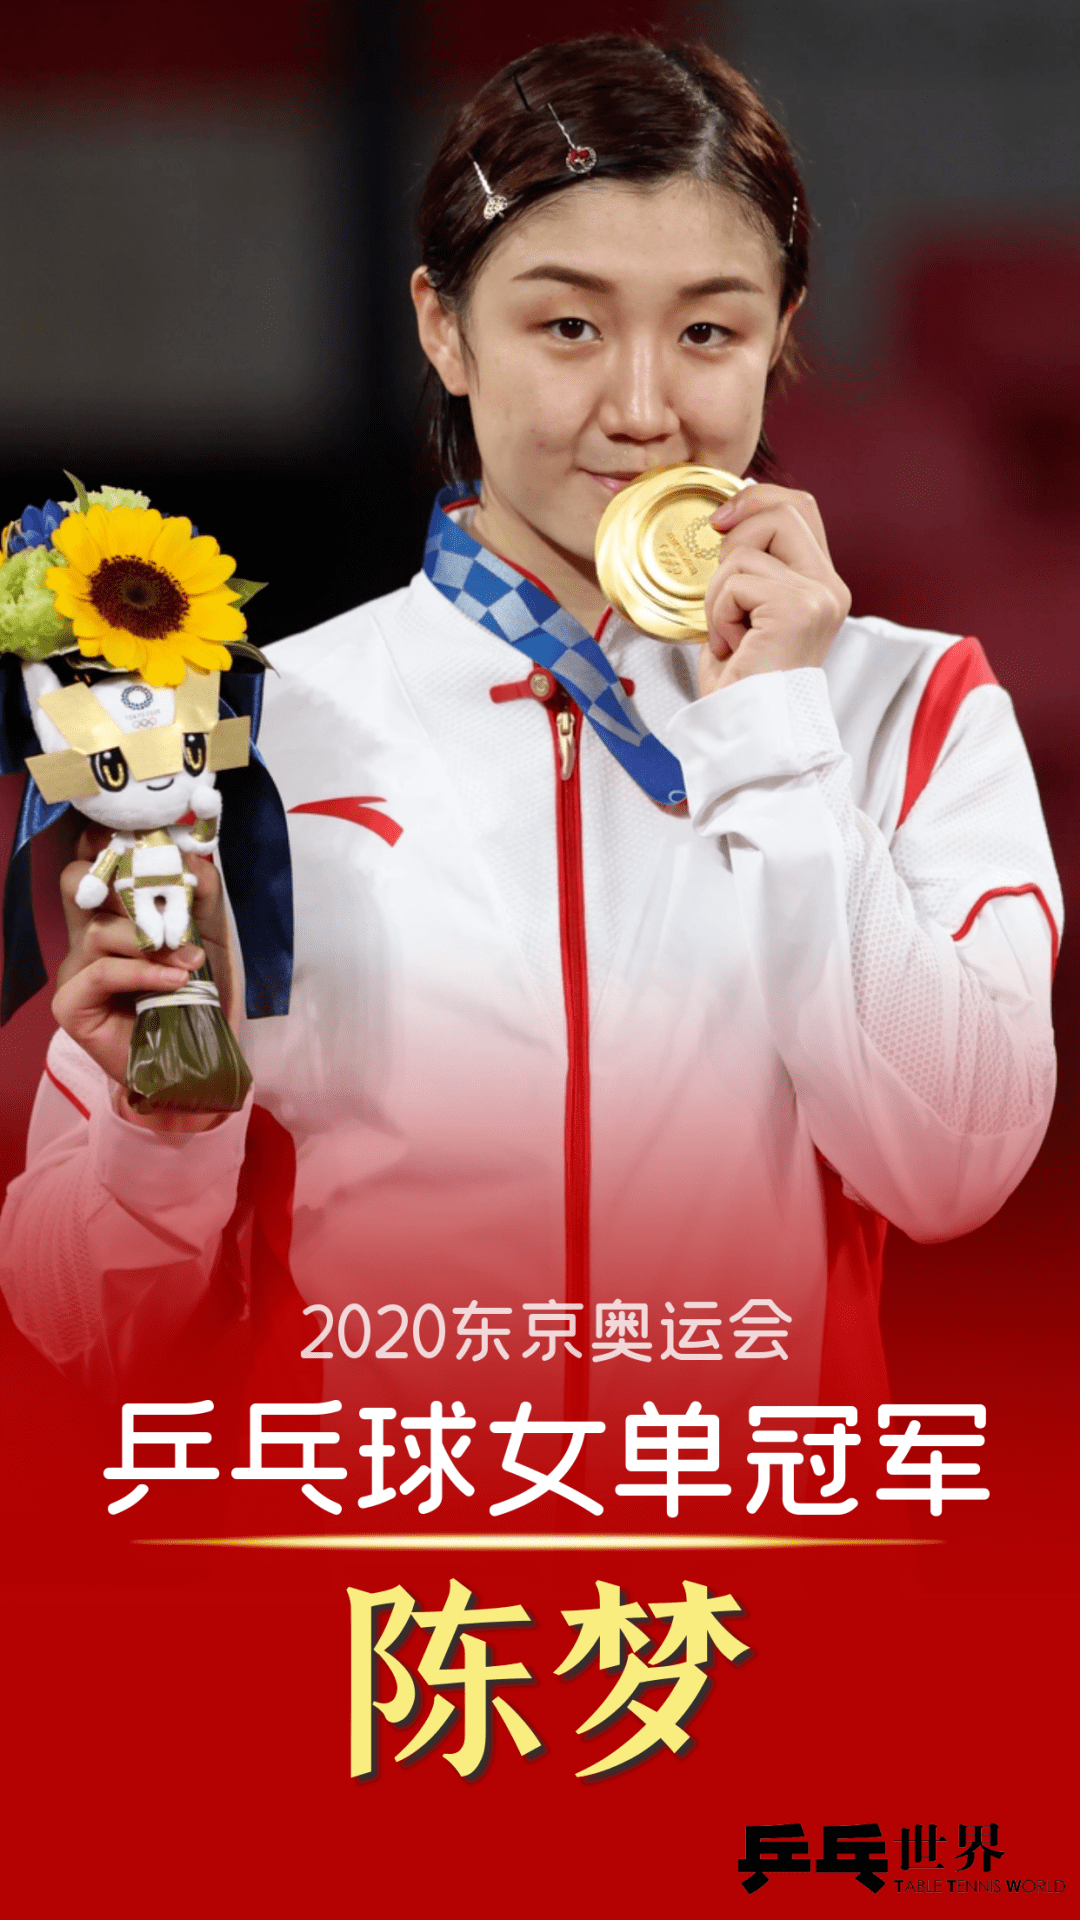 今天,奥运会女单冠军榜上又添上了新的名字——陈梦.